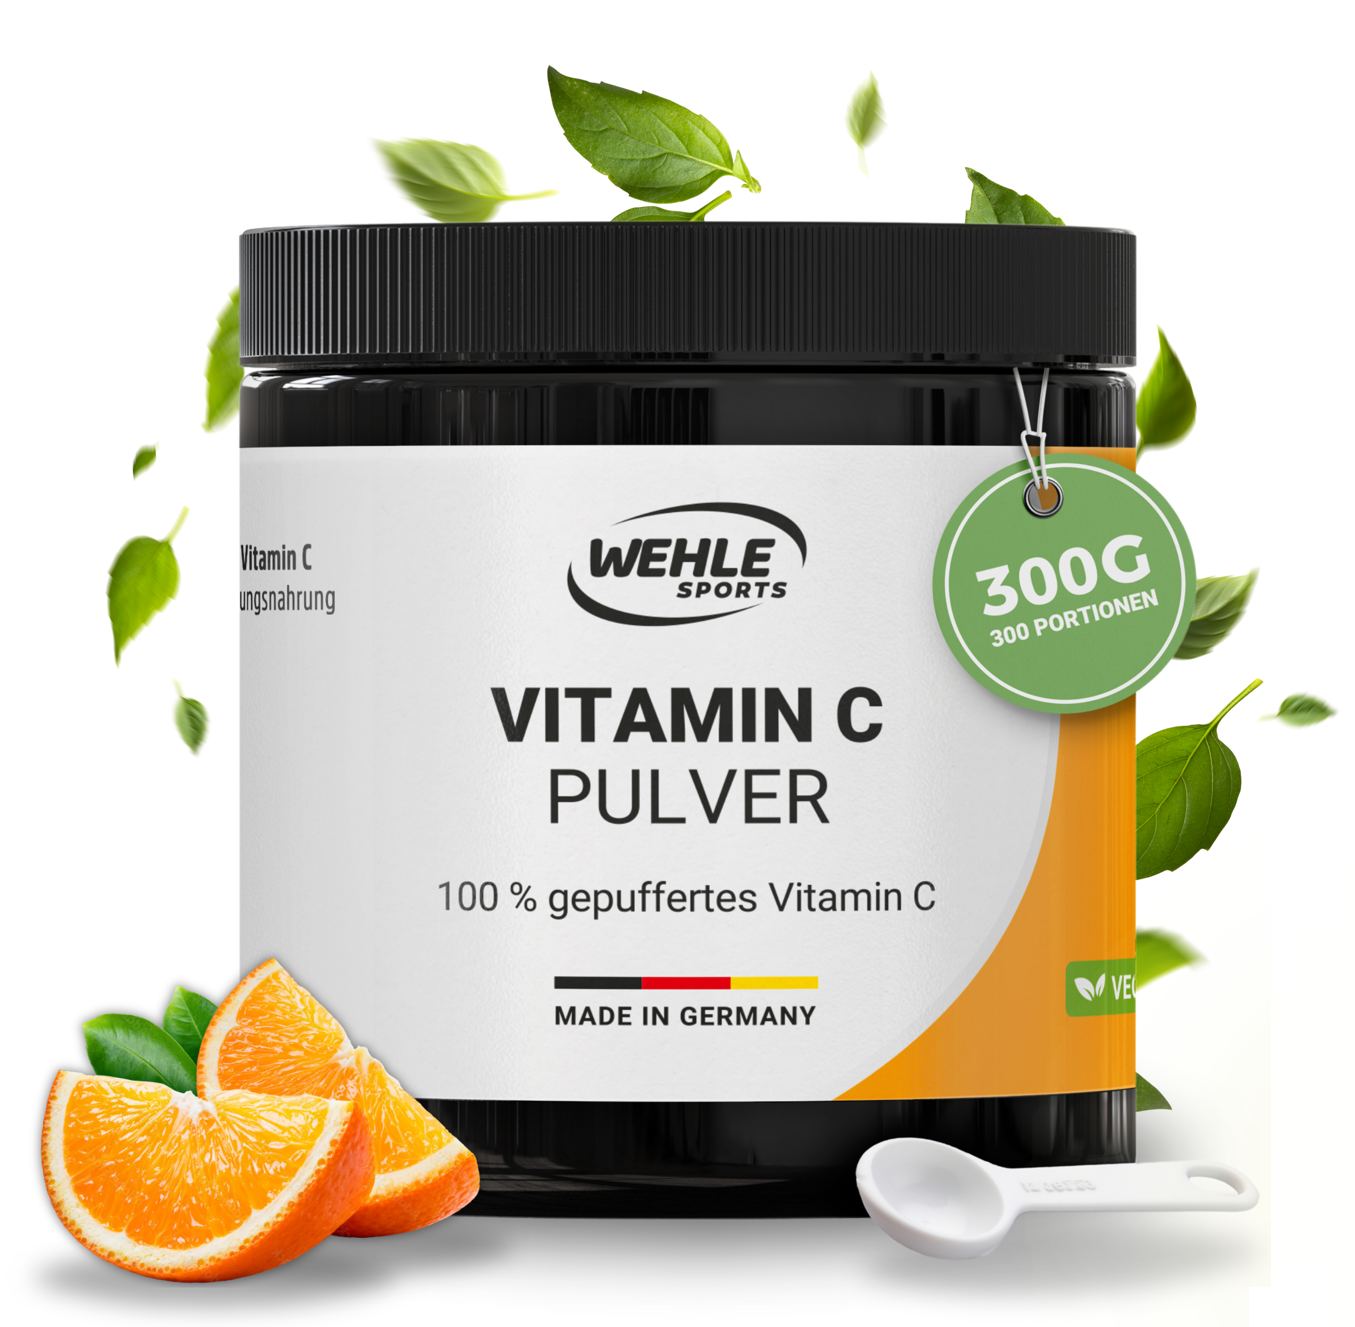 Wehle Sports Vitamin C Pulver - 300g